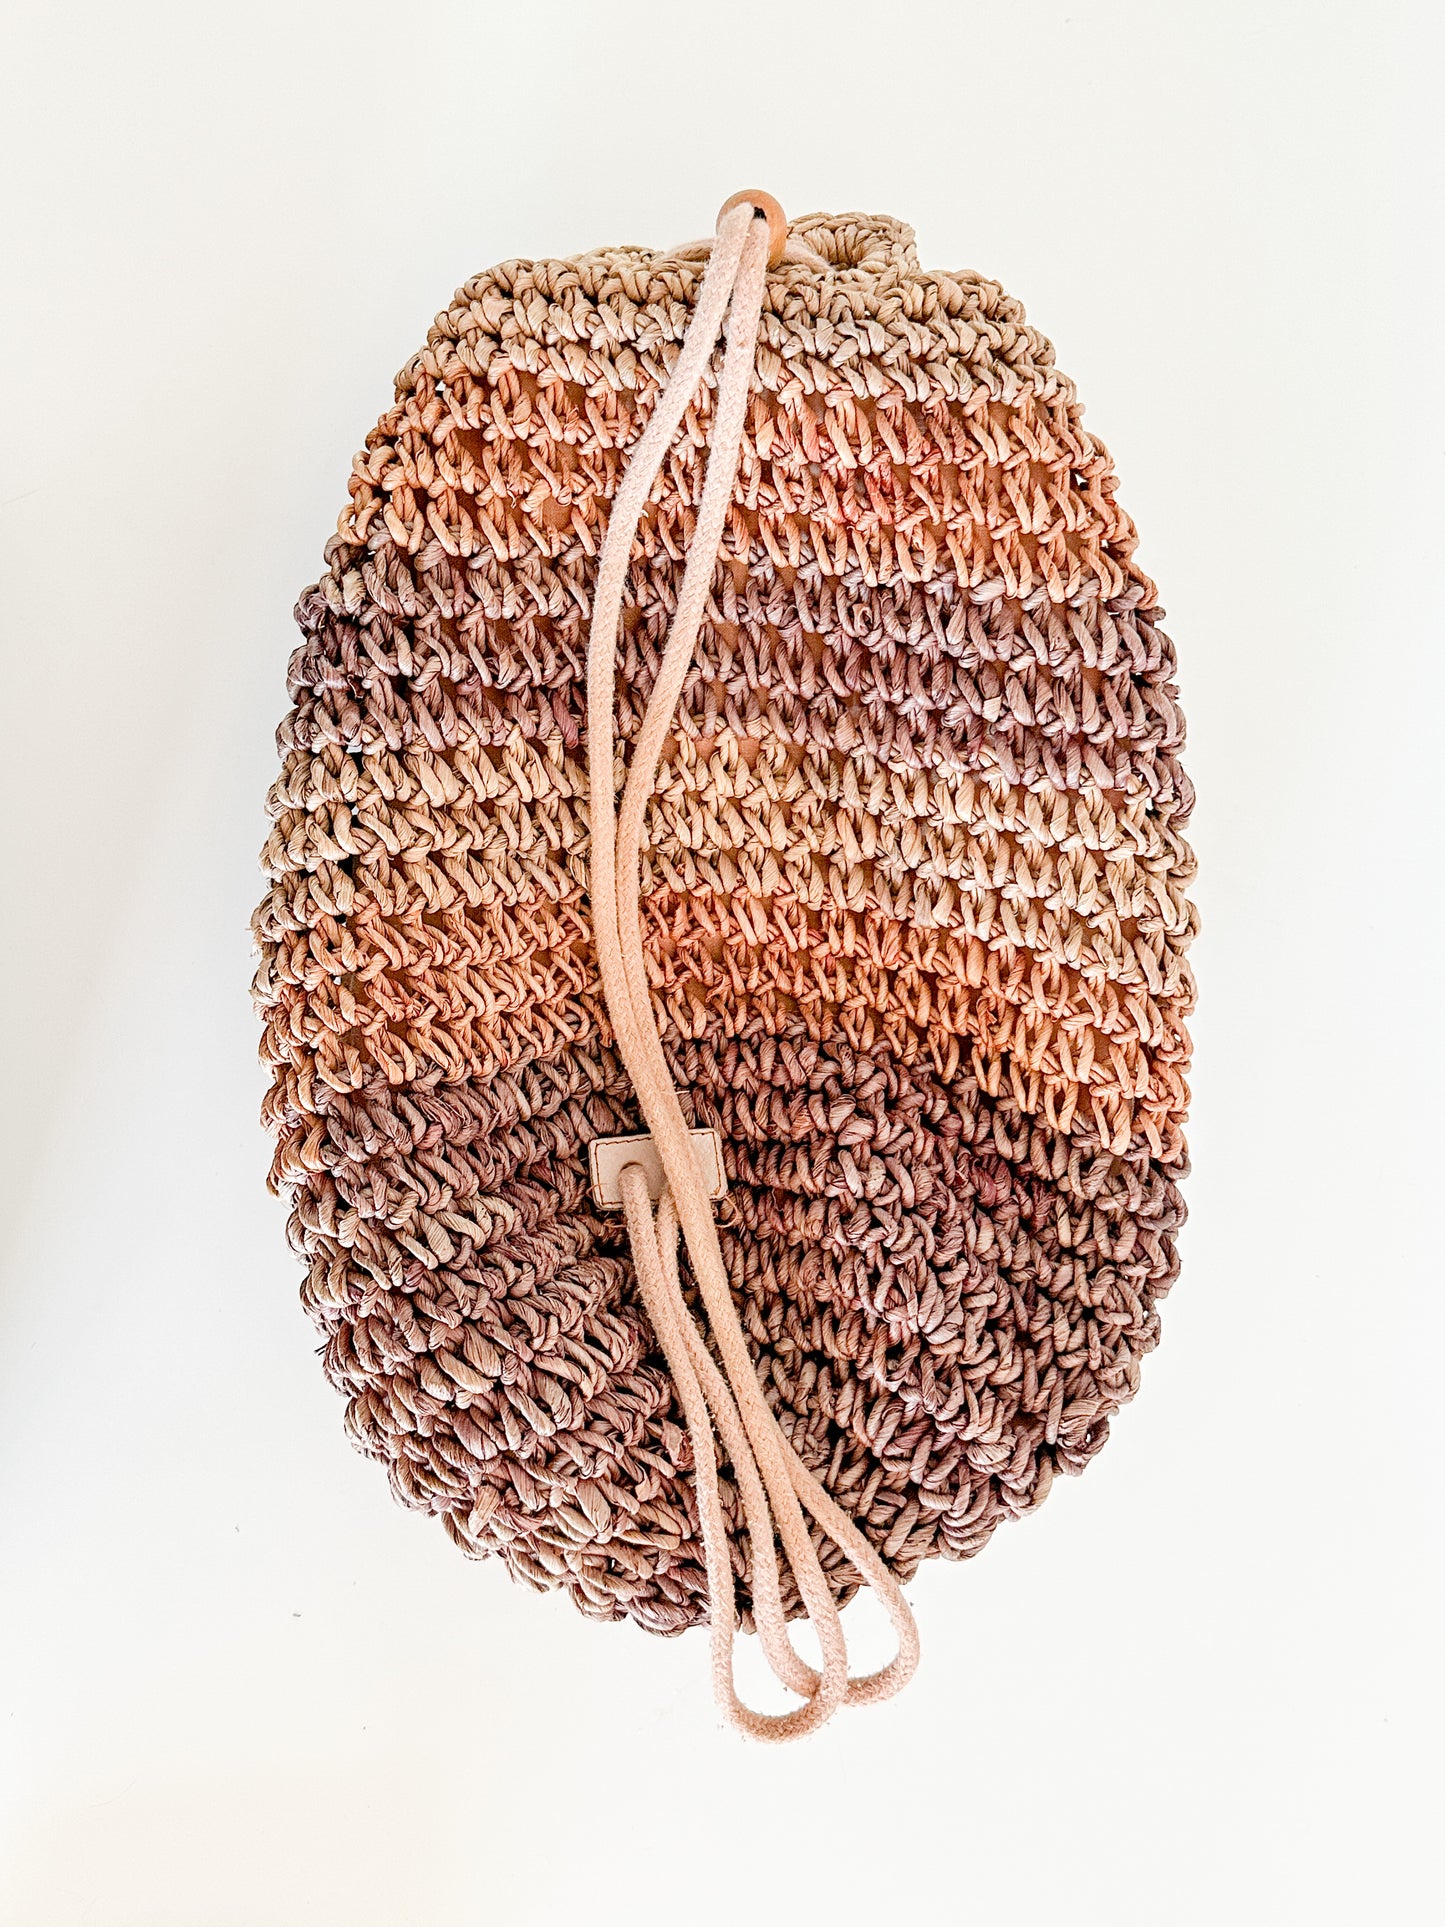 Vintage Boho Crochet Bag